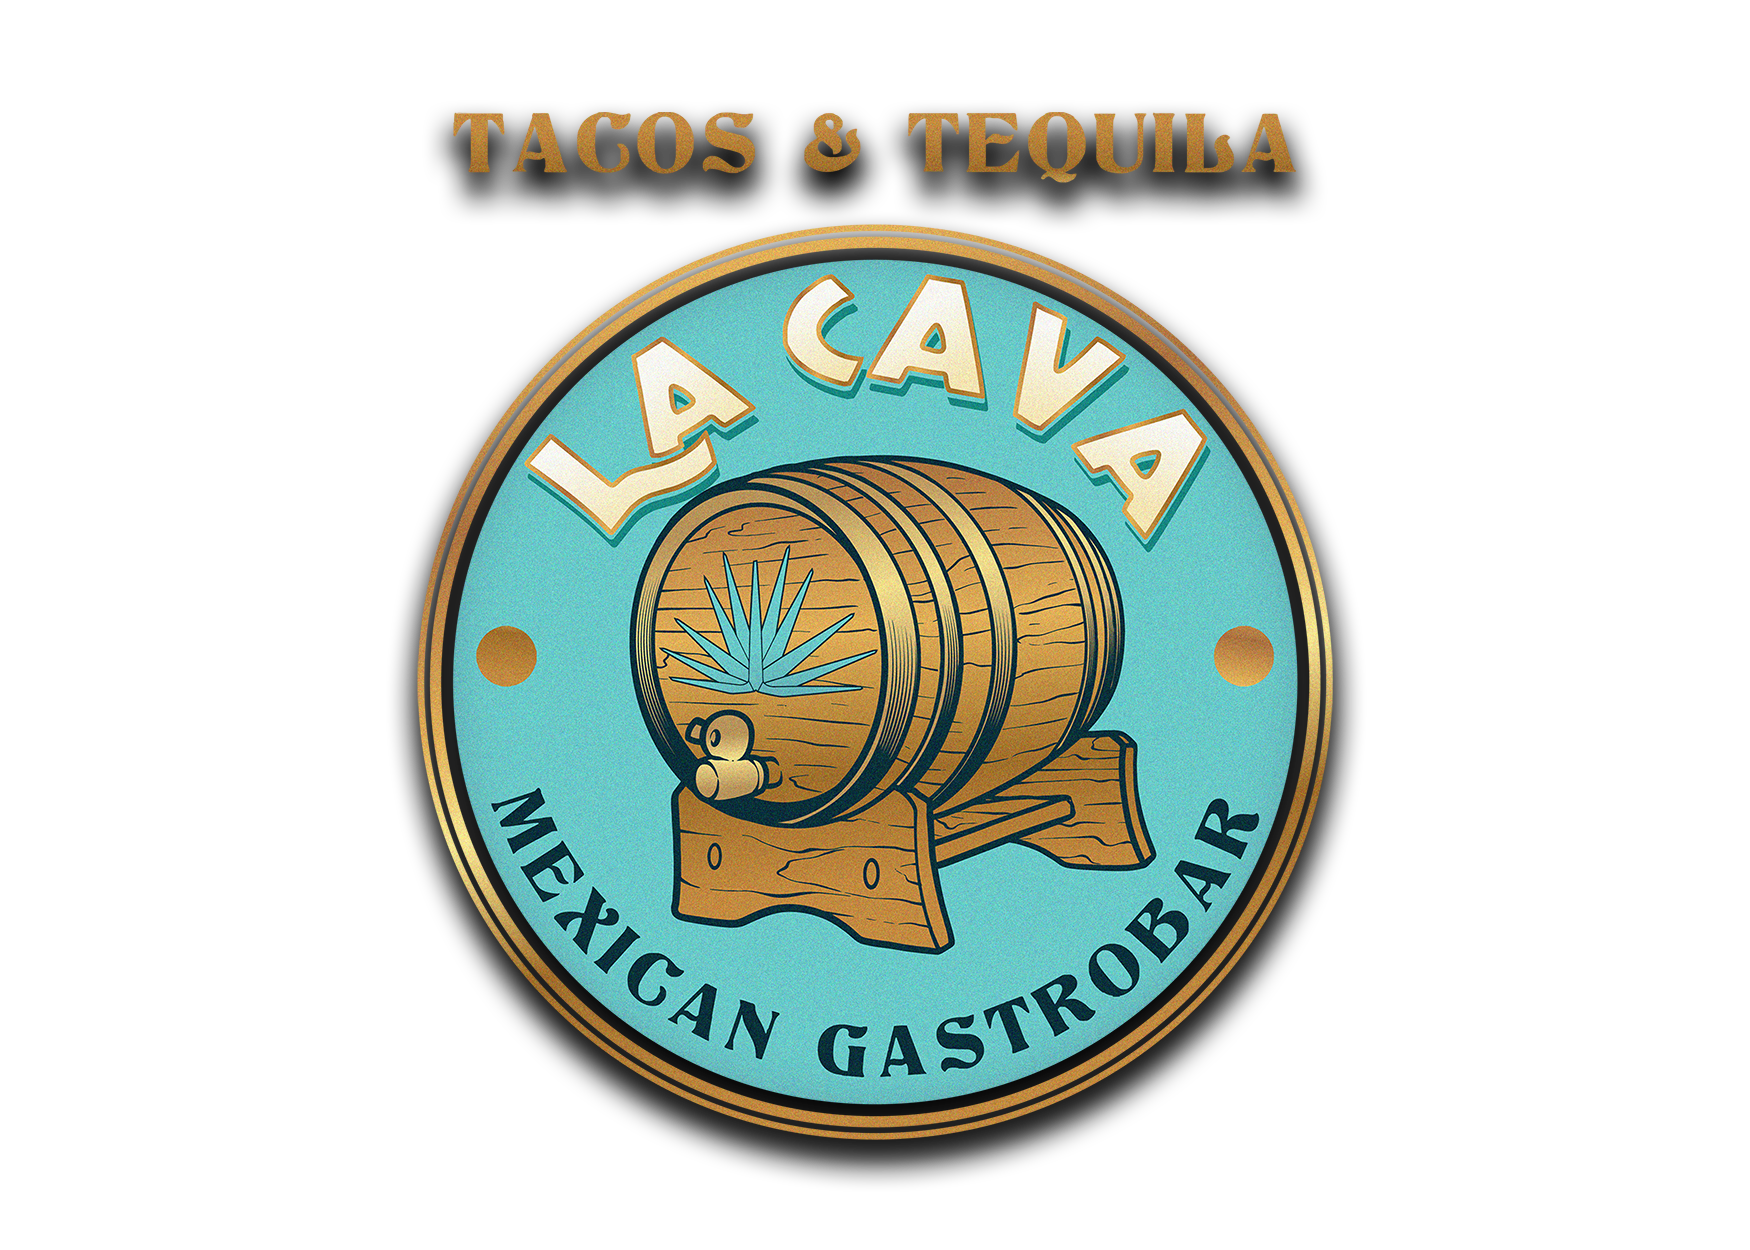 Tacos & Tequila La Cava Mexican Gastrobar